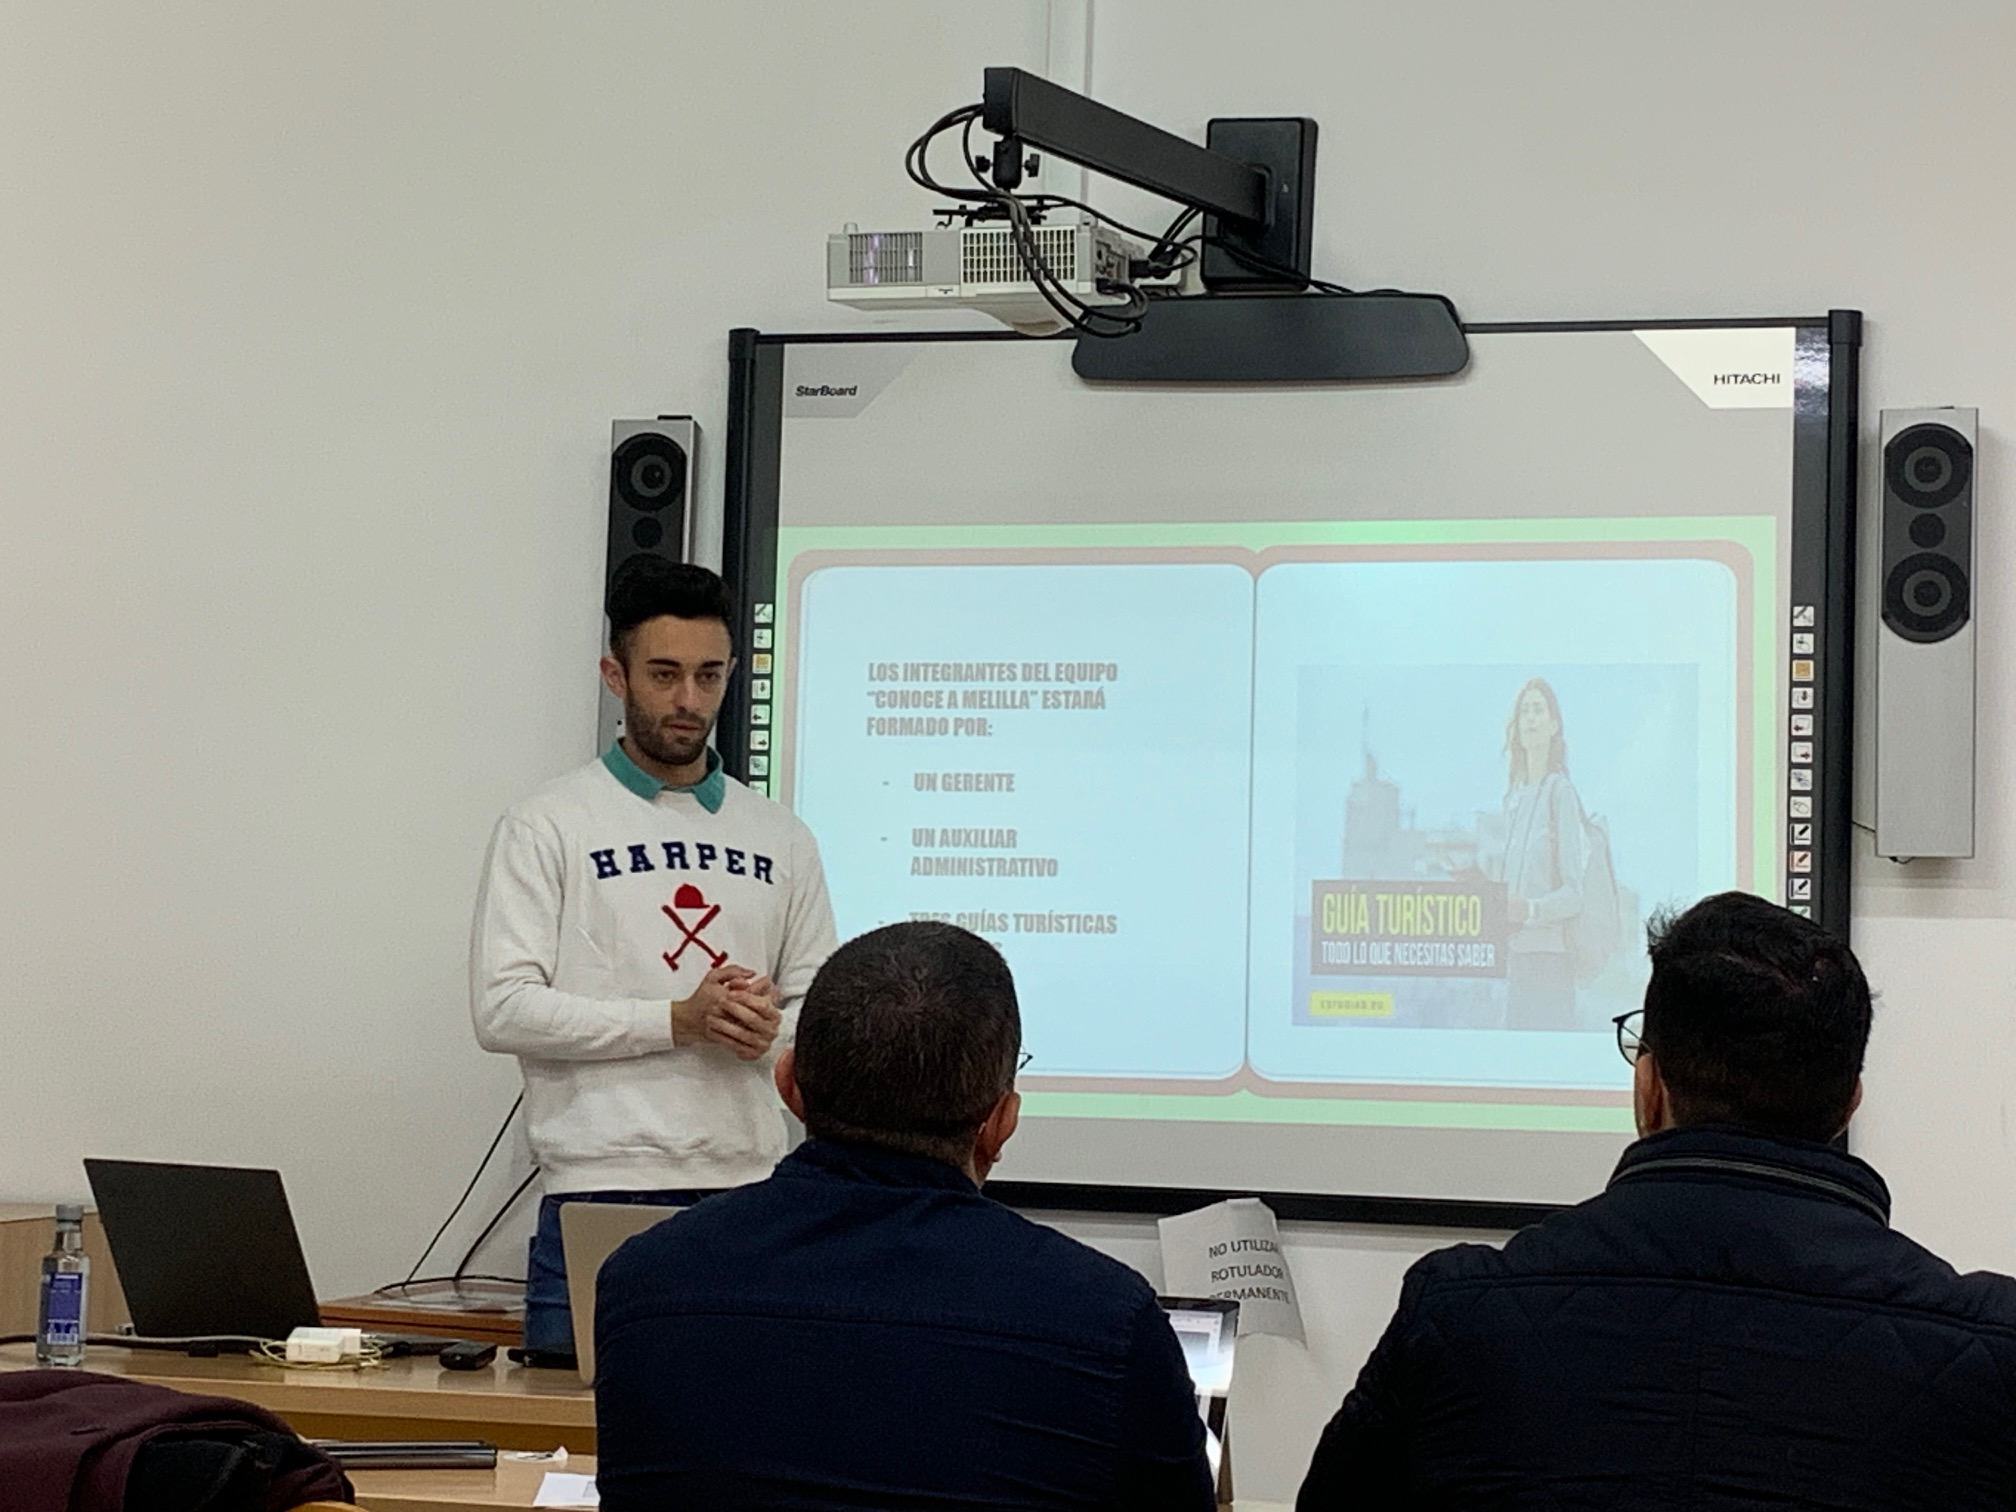 Foto del ganador explicando su idea con una presentación en una pantalla a dos examinadores que están sentados frente a él